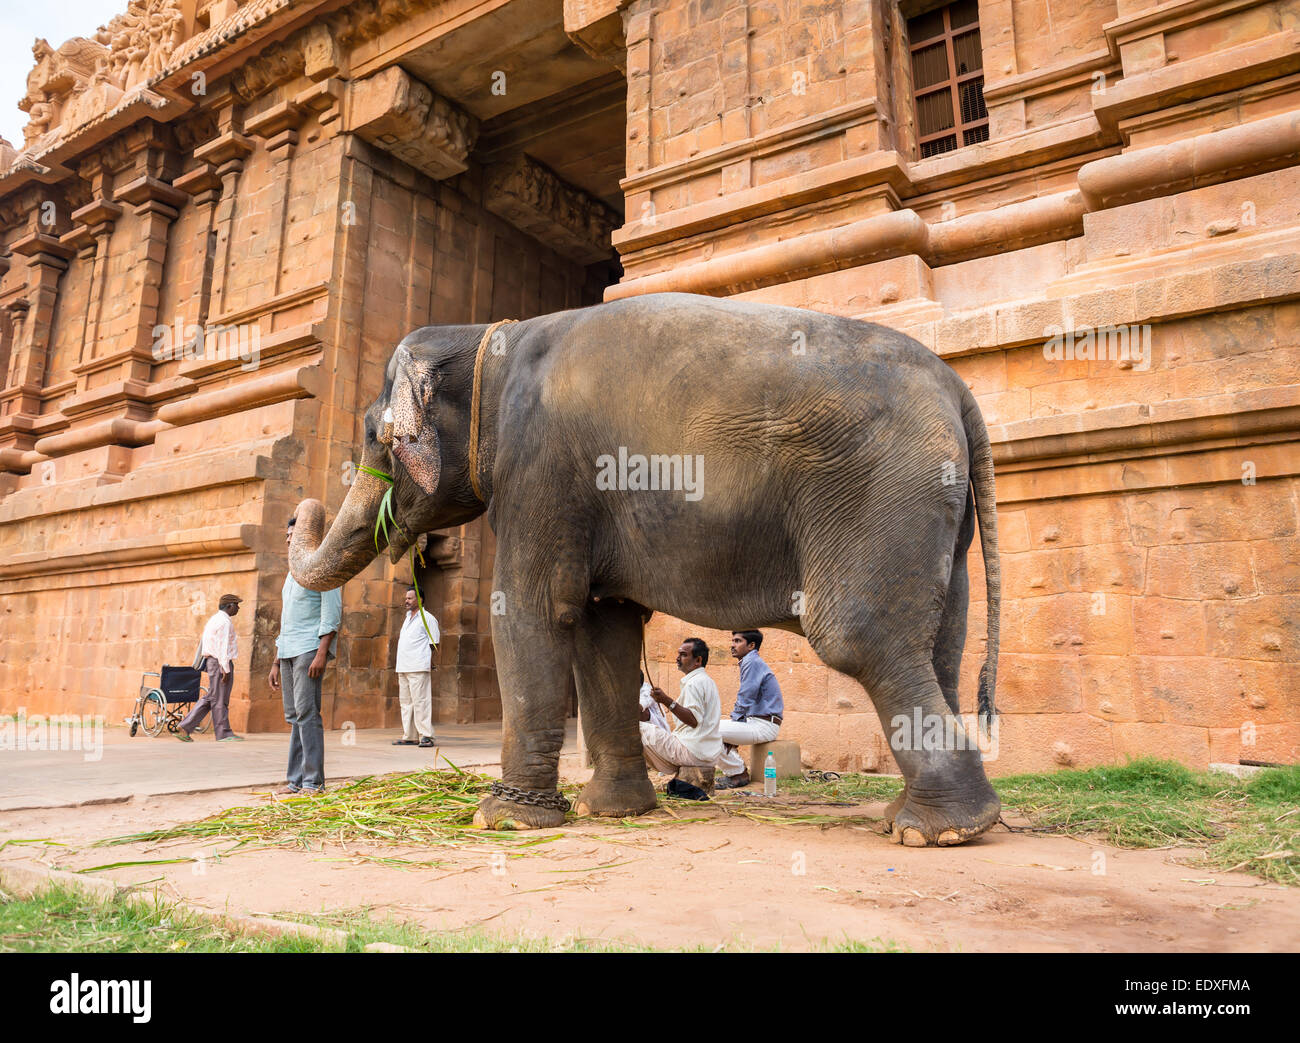 THANJAVOUR, India - 13 febbraio: un elefante benedice l uomo non identificato di presso il Tempio Brihadishwara. India, nello Stato del Tamil Nadu, Thanjav Foto Stock